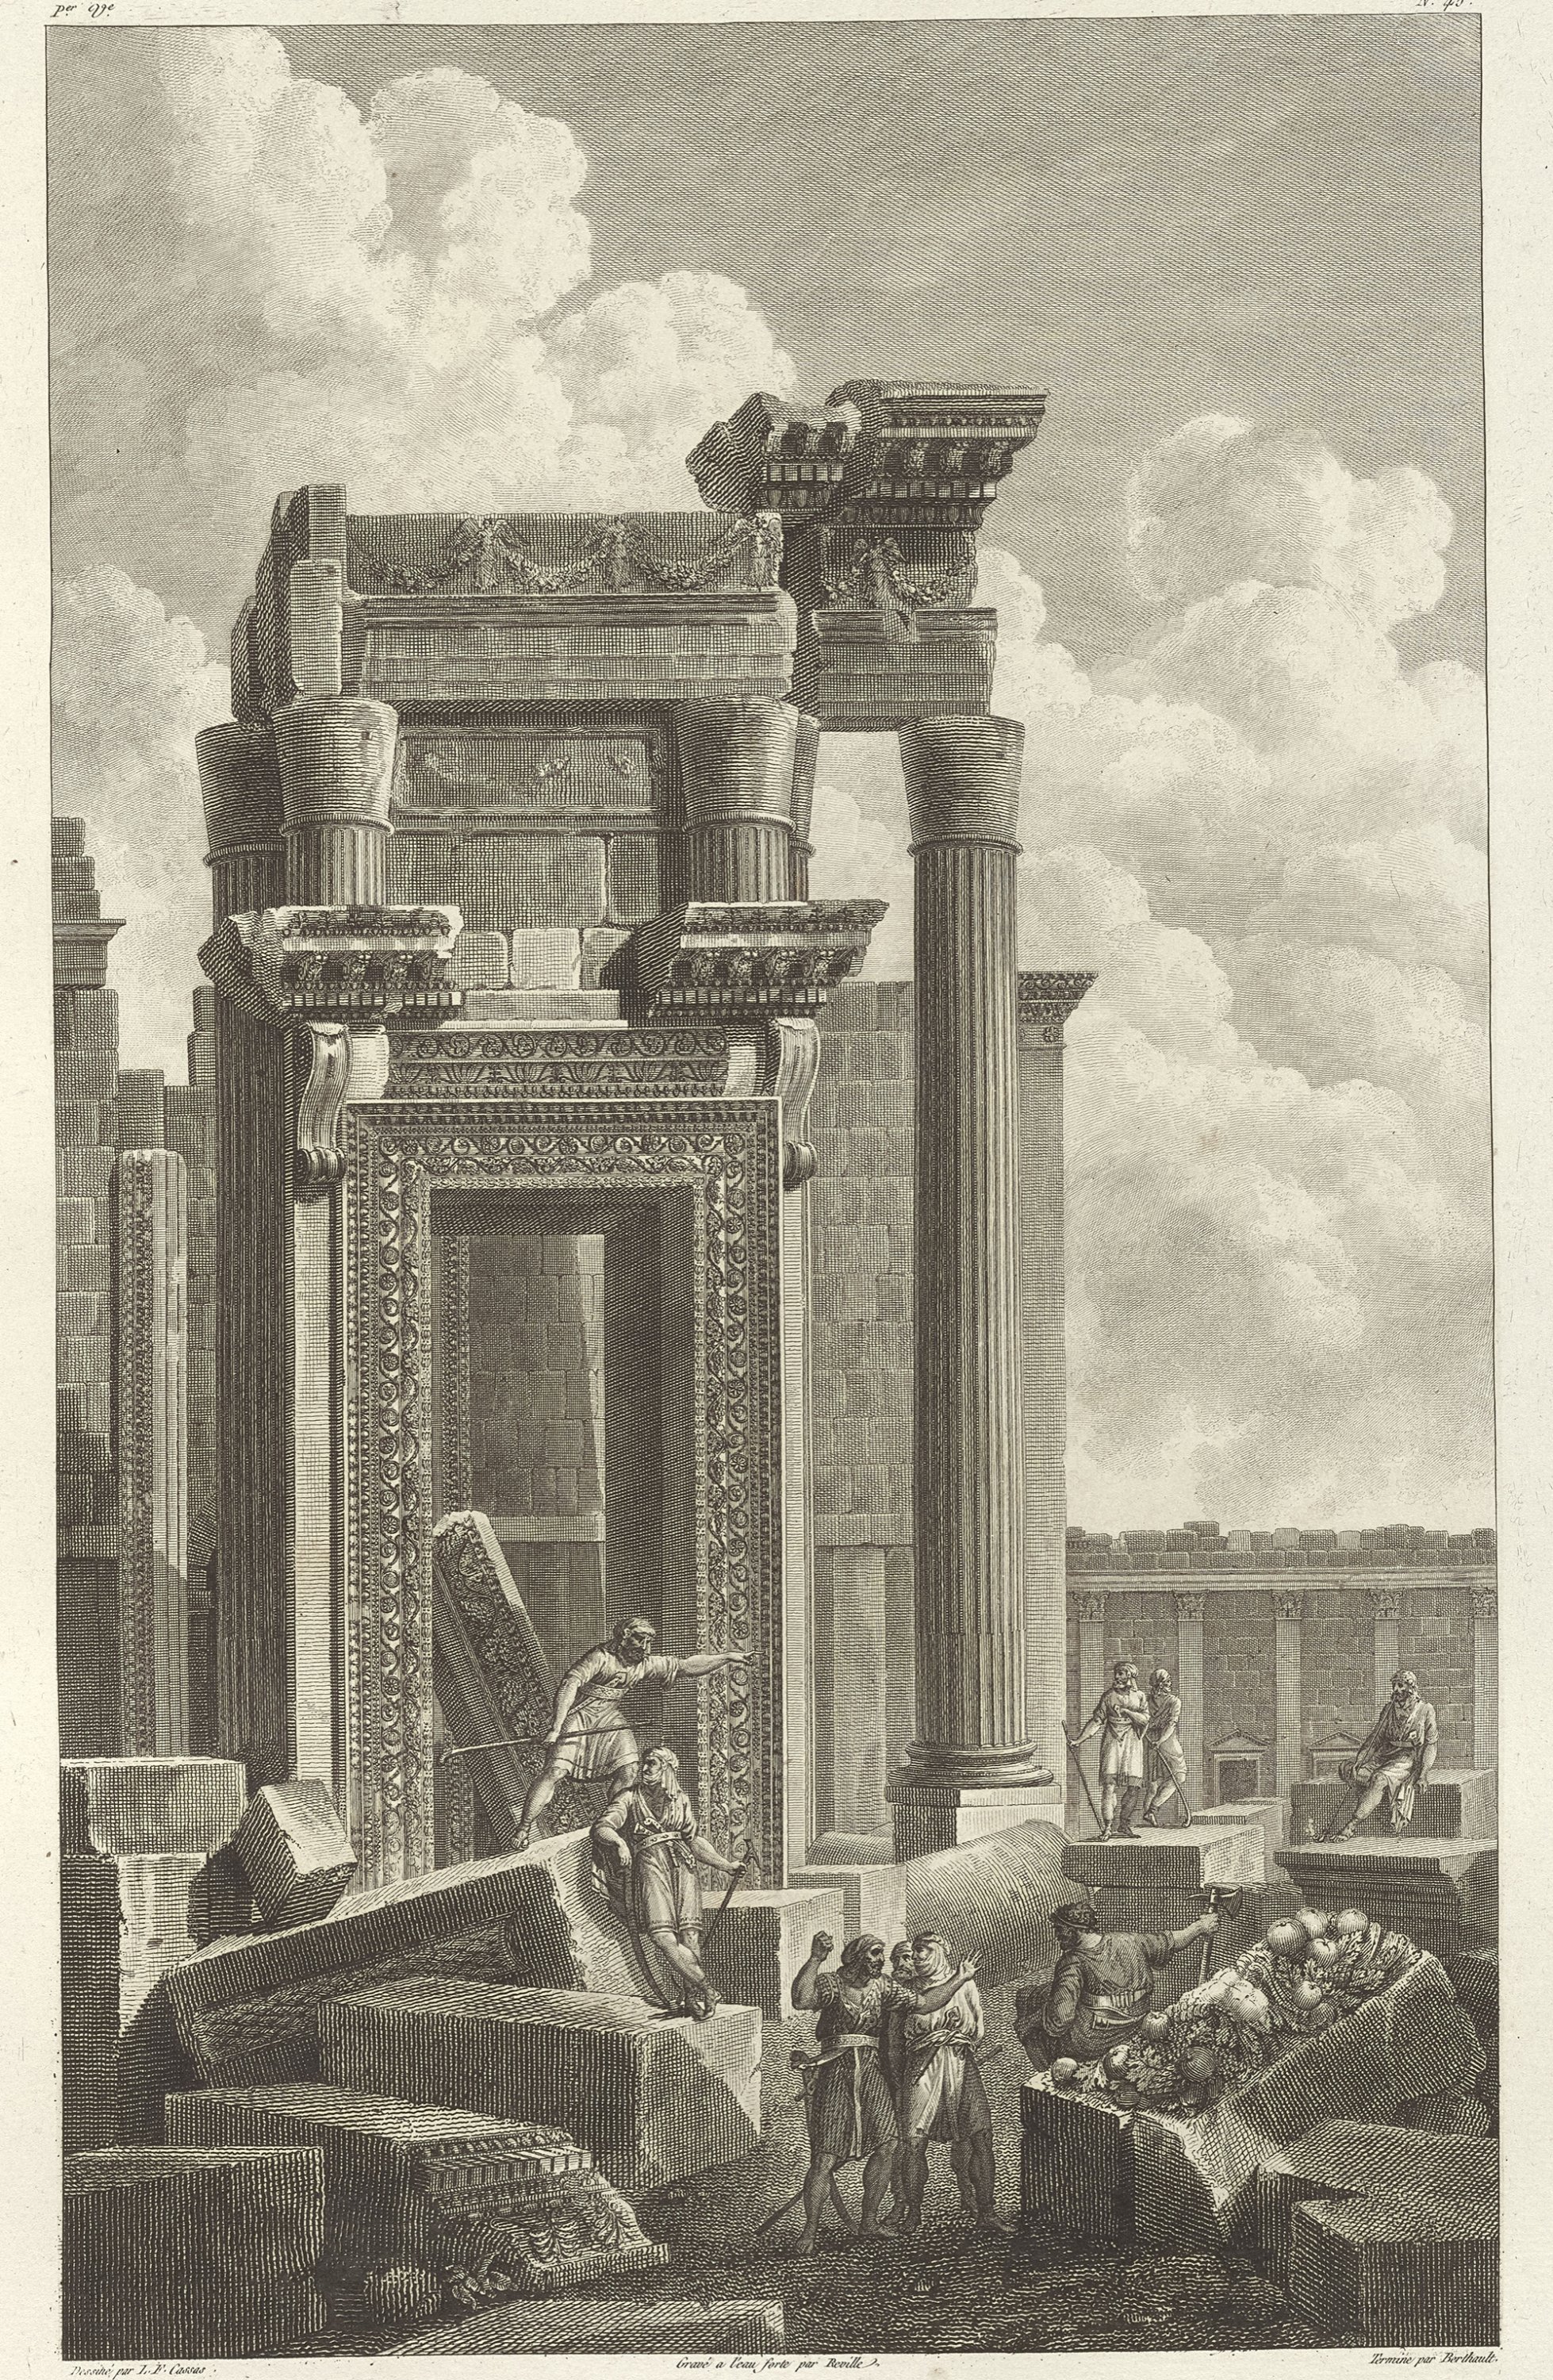 Temple of Bel, Jean-Baptiste Reville and Pierre-Gabriel Berthault after Louis-François Cassas, etching, 46 by 29 centimeters. 